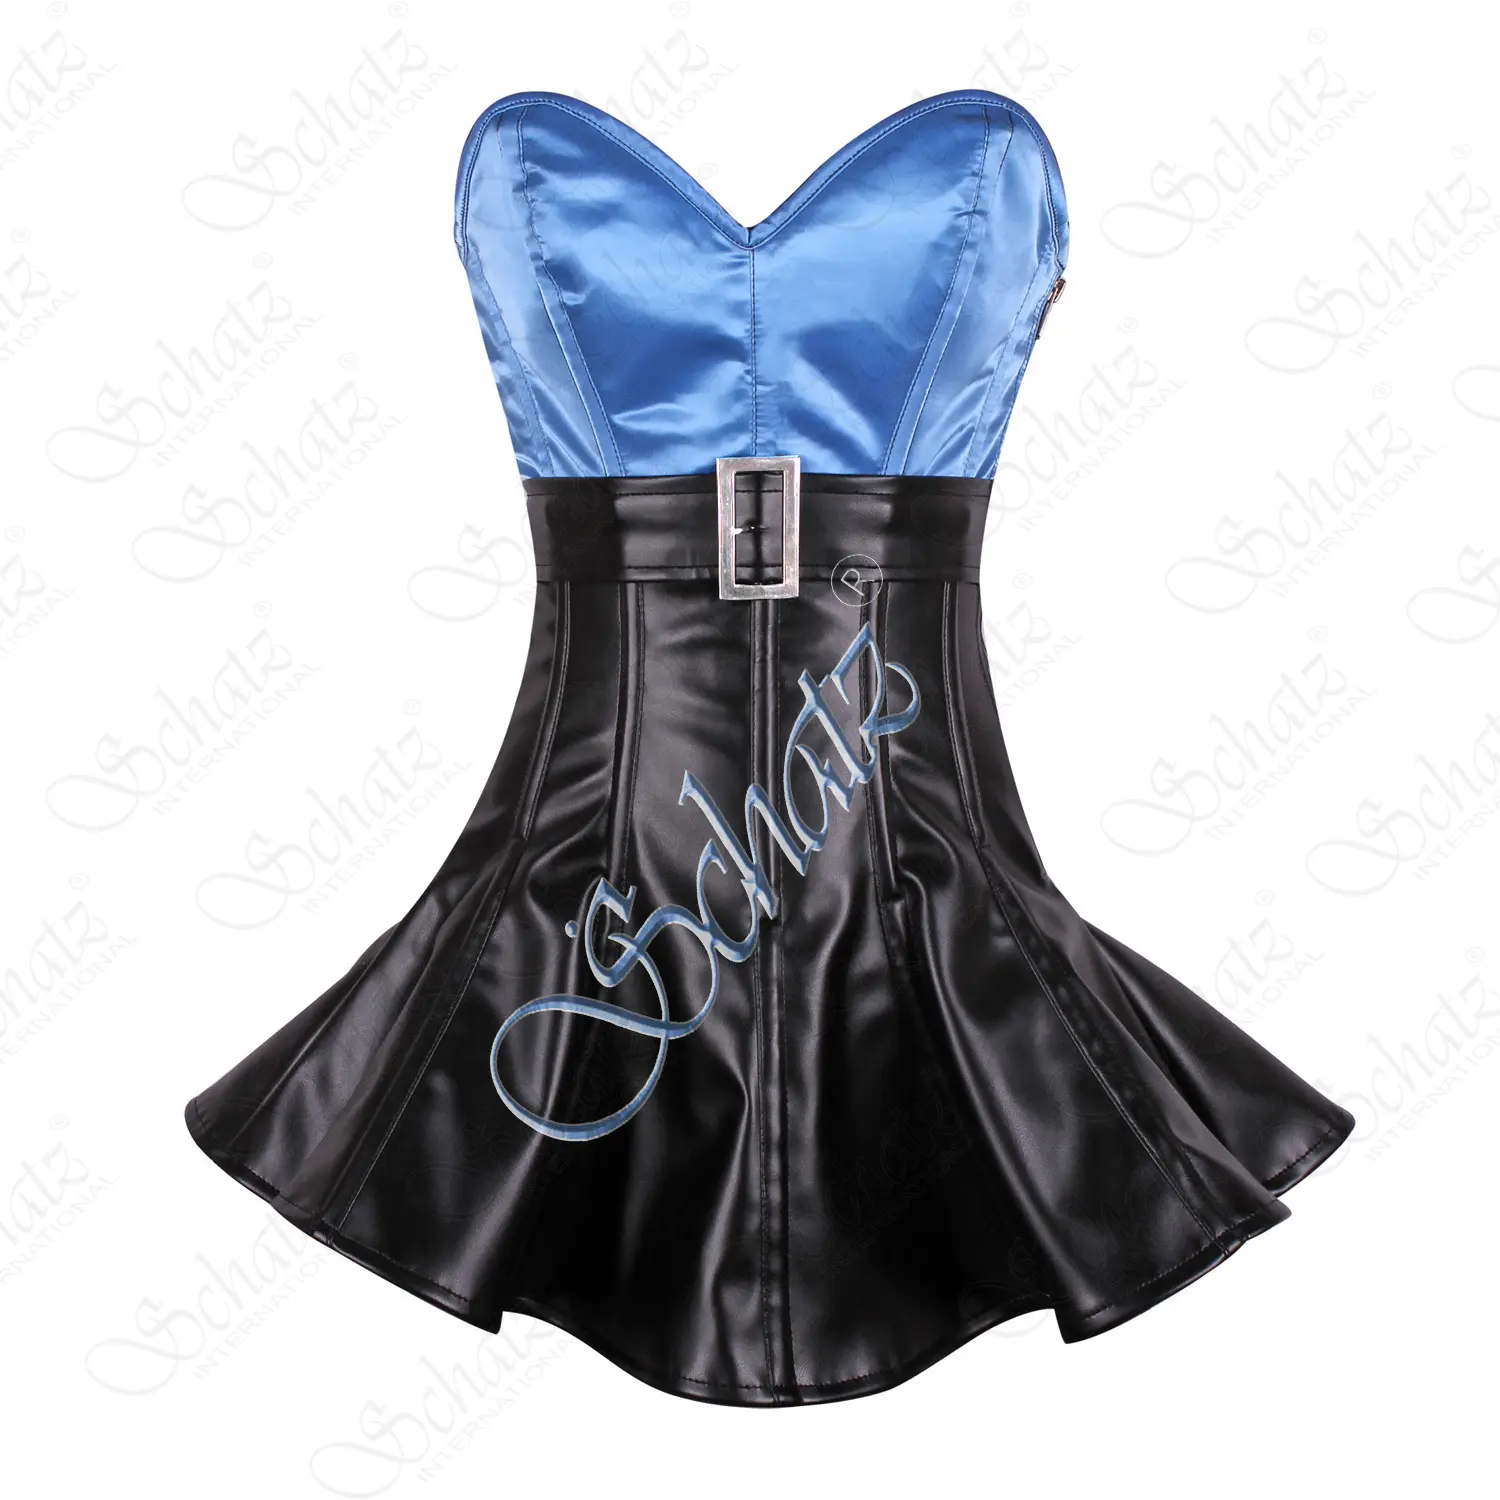 Bestseller blaues schwarzes Korsett 3-schicht-Überzugskorsett-Kleid aus hochwertigem Satin und Kunstlederstoff Korsett-Corsetten